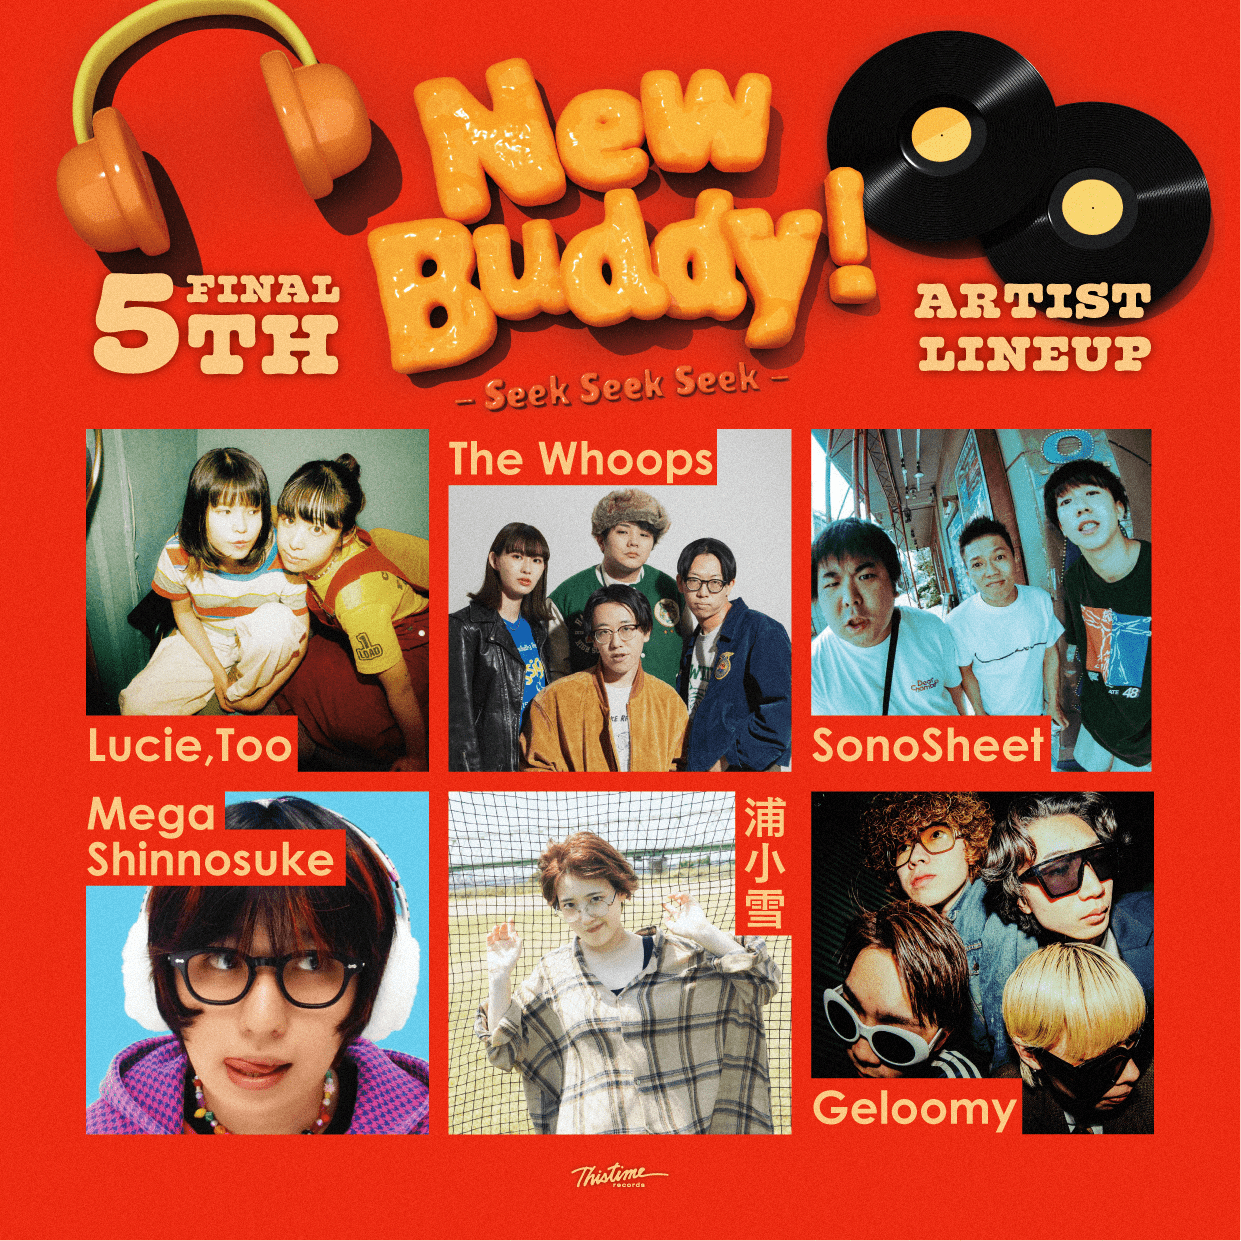 サーキットフェス『New Buddy! -Seek Seek Seek-』タイムテーブル&最終アーティスト6組&深夜公演を発表